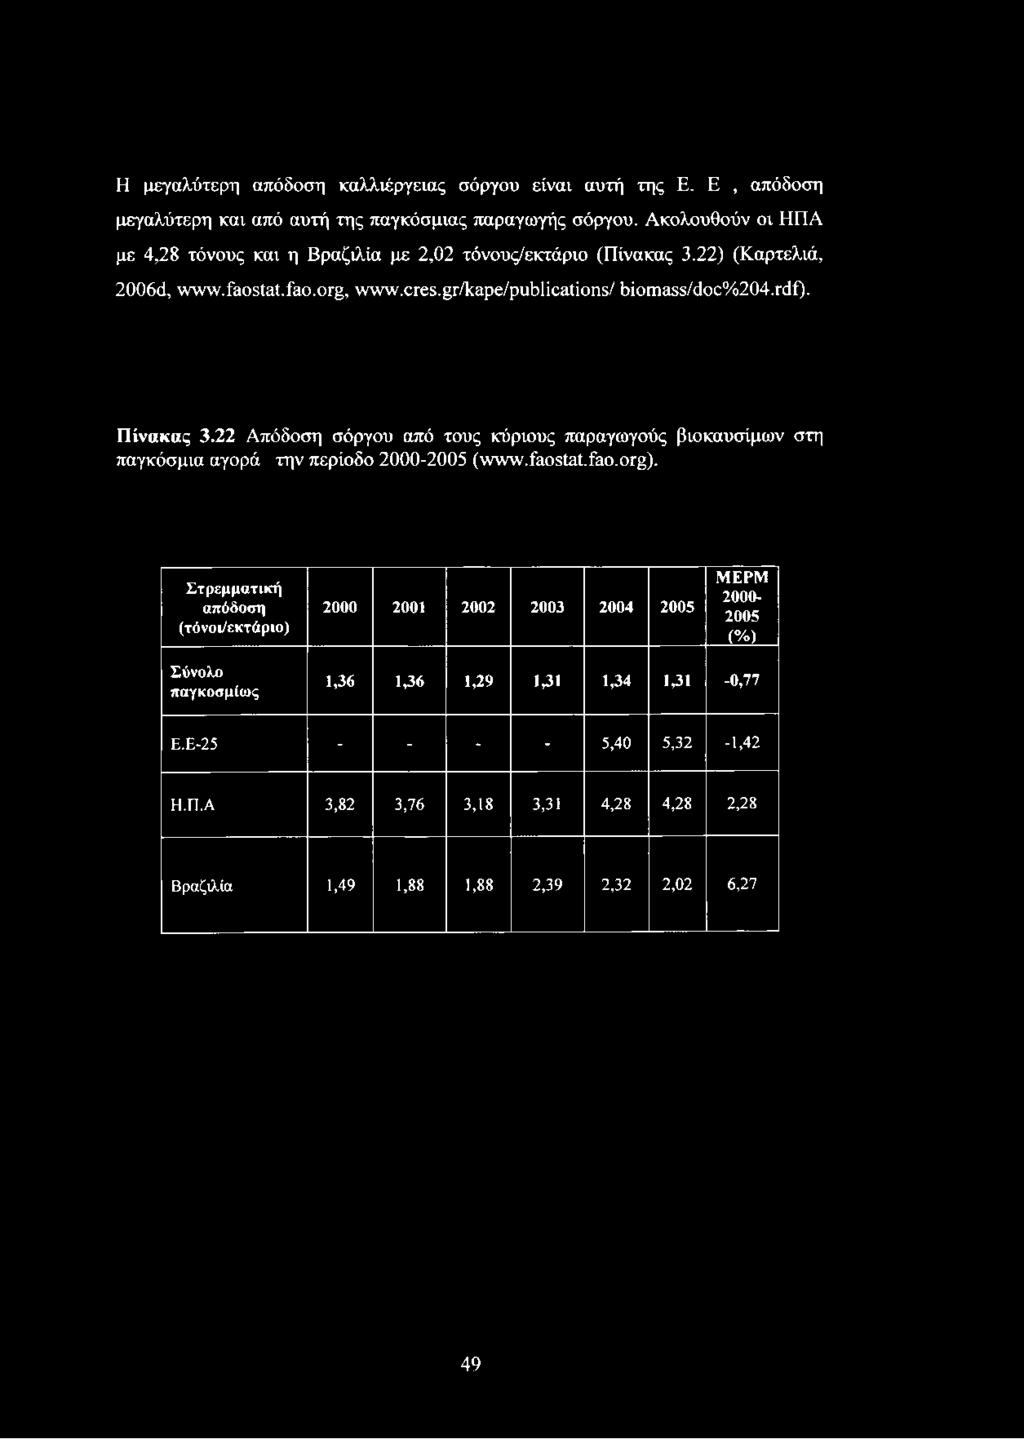 γ(1ί). Πίνακας 3.22 Απόδοση σόργου από τους κύριους παραγωγούς βιοκαυσίμων στη παγκόσμια αγορά την περίοδο 2000-2005 (www.faostat.fao.org).